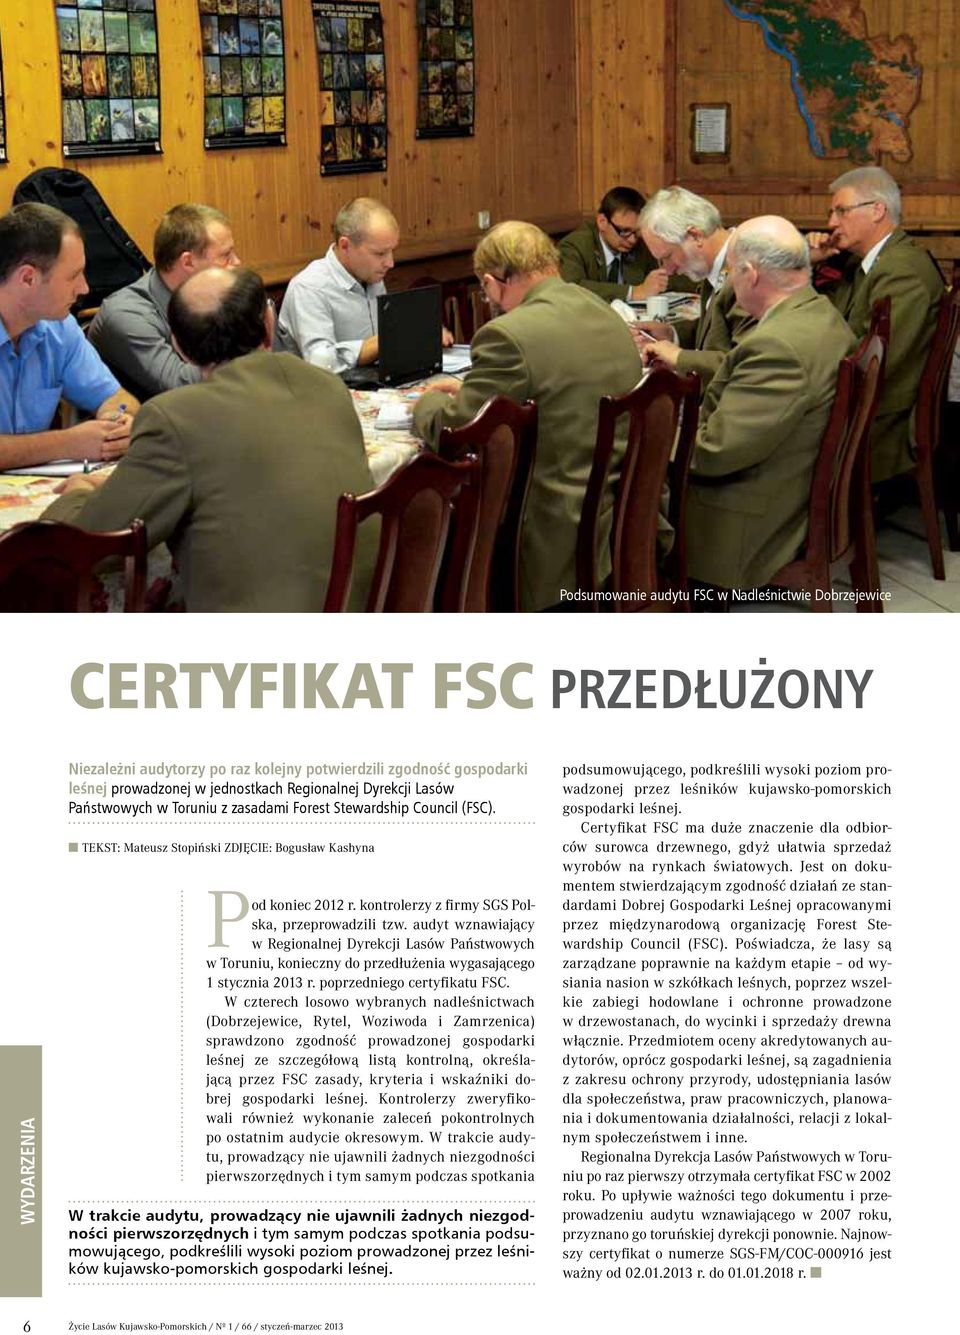 kontrolerzy z firmy SGS Polska, przeprowadzili tzw. audyt wznawiający w Regionalnej Dyrekcji Lasów Państwowych w Toruniu, konieczny do przedłużenia wygasającego 1 stycznia 2013 r.